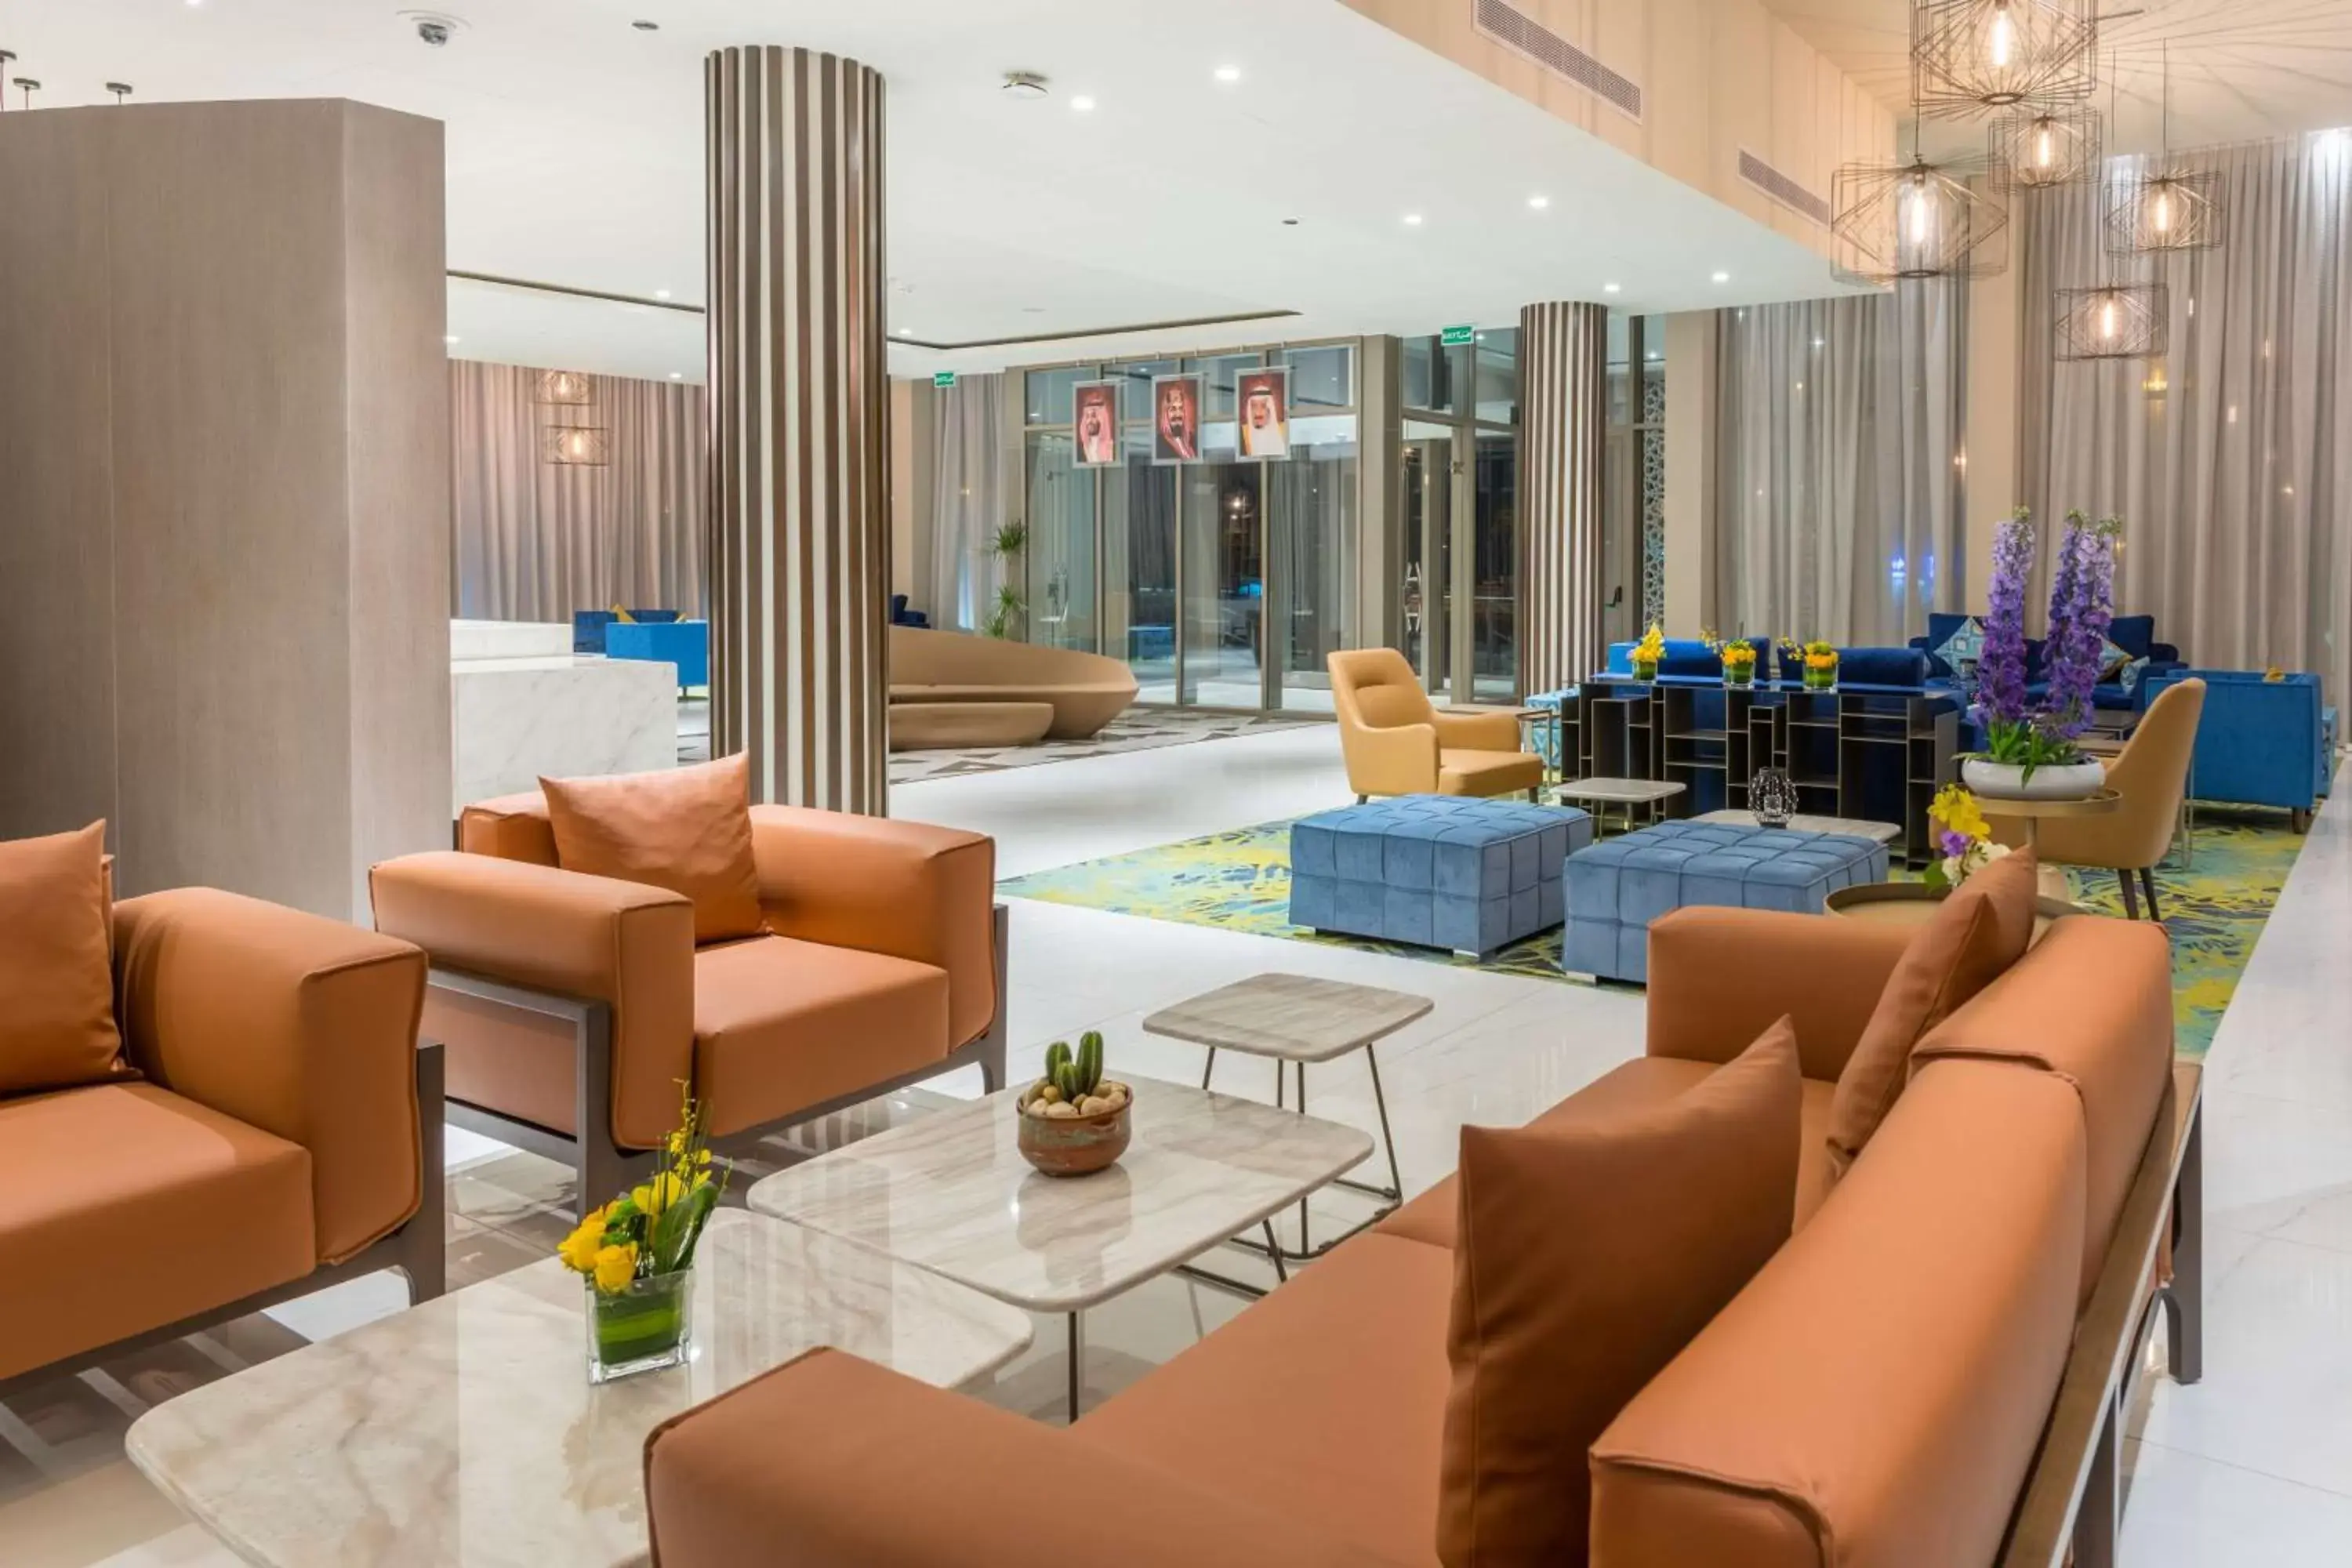 Lobby or reception, Lobby/Reception in Radisson Blu Hotel, Jeddah Corniche